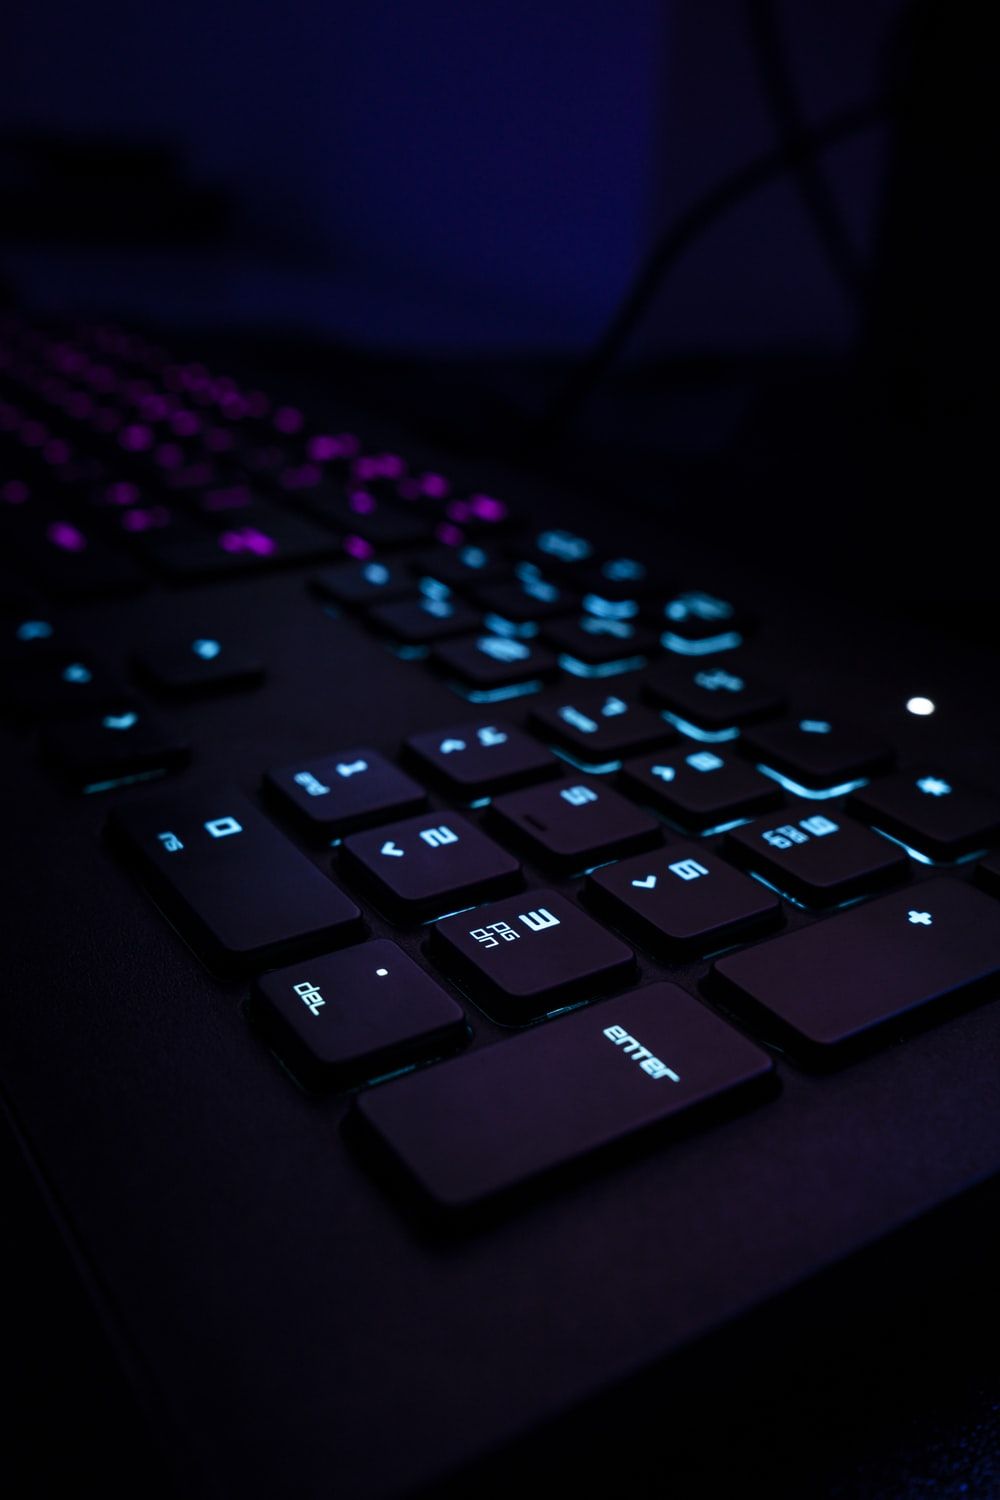 Gaming Keyboard Picture. Download Free Image